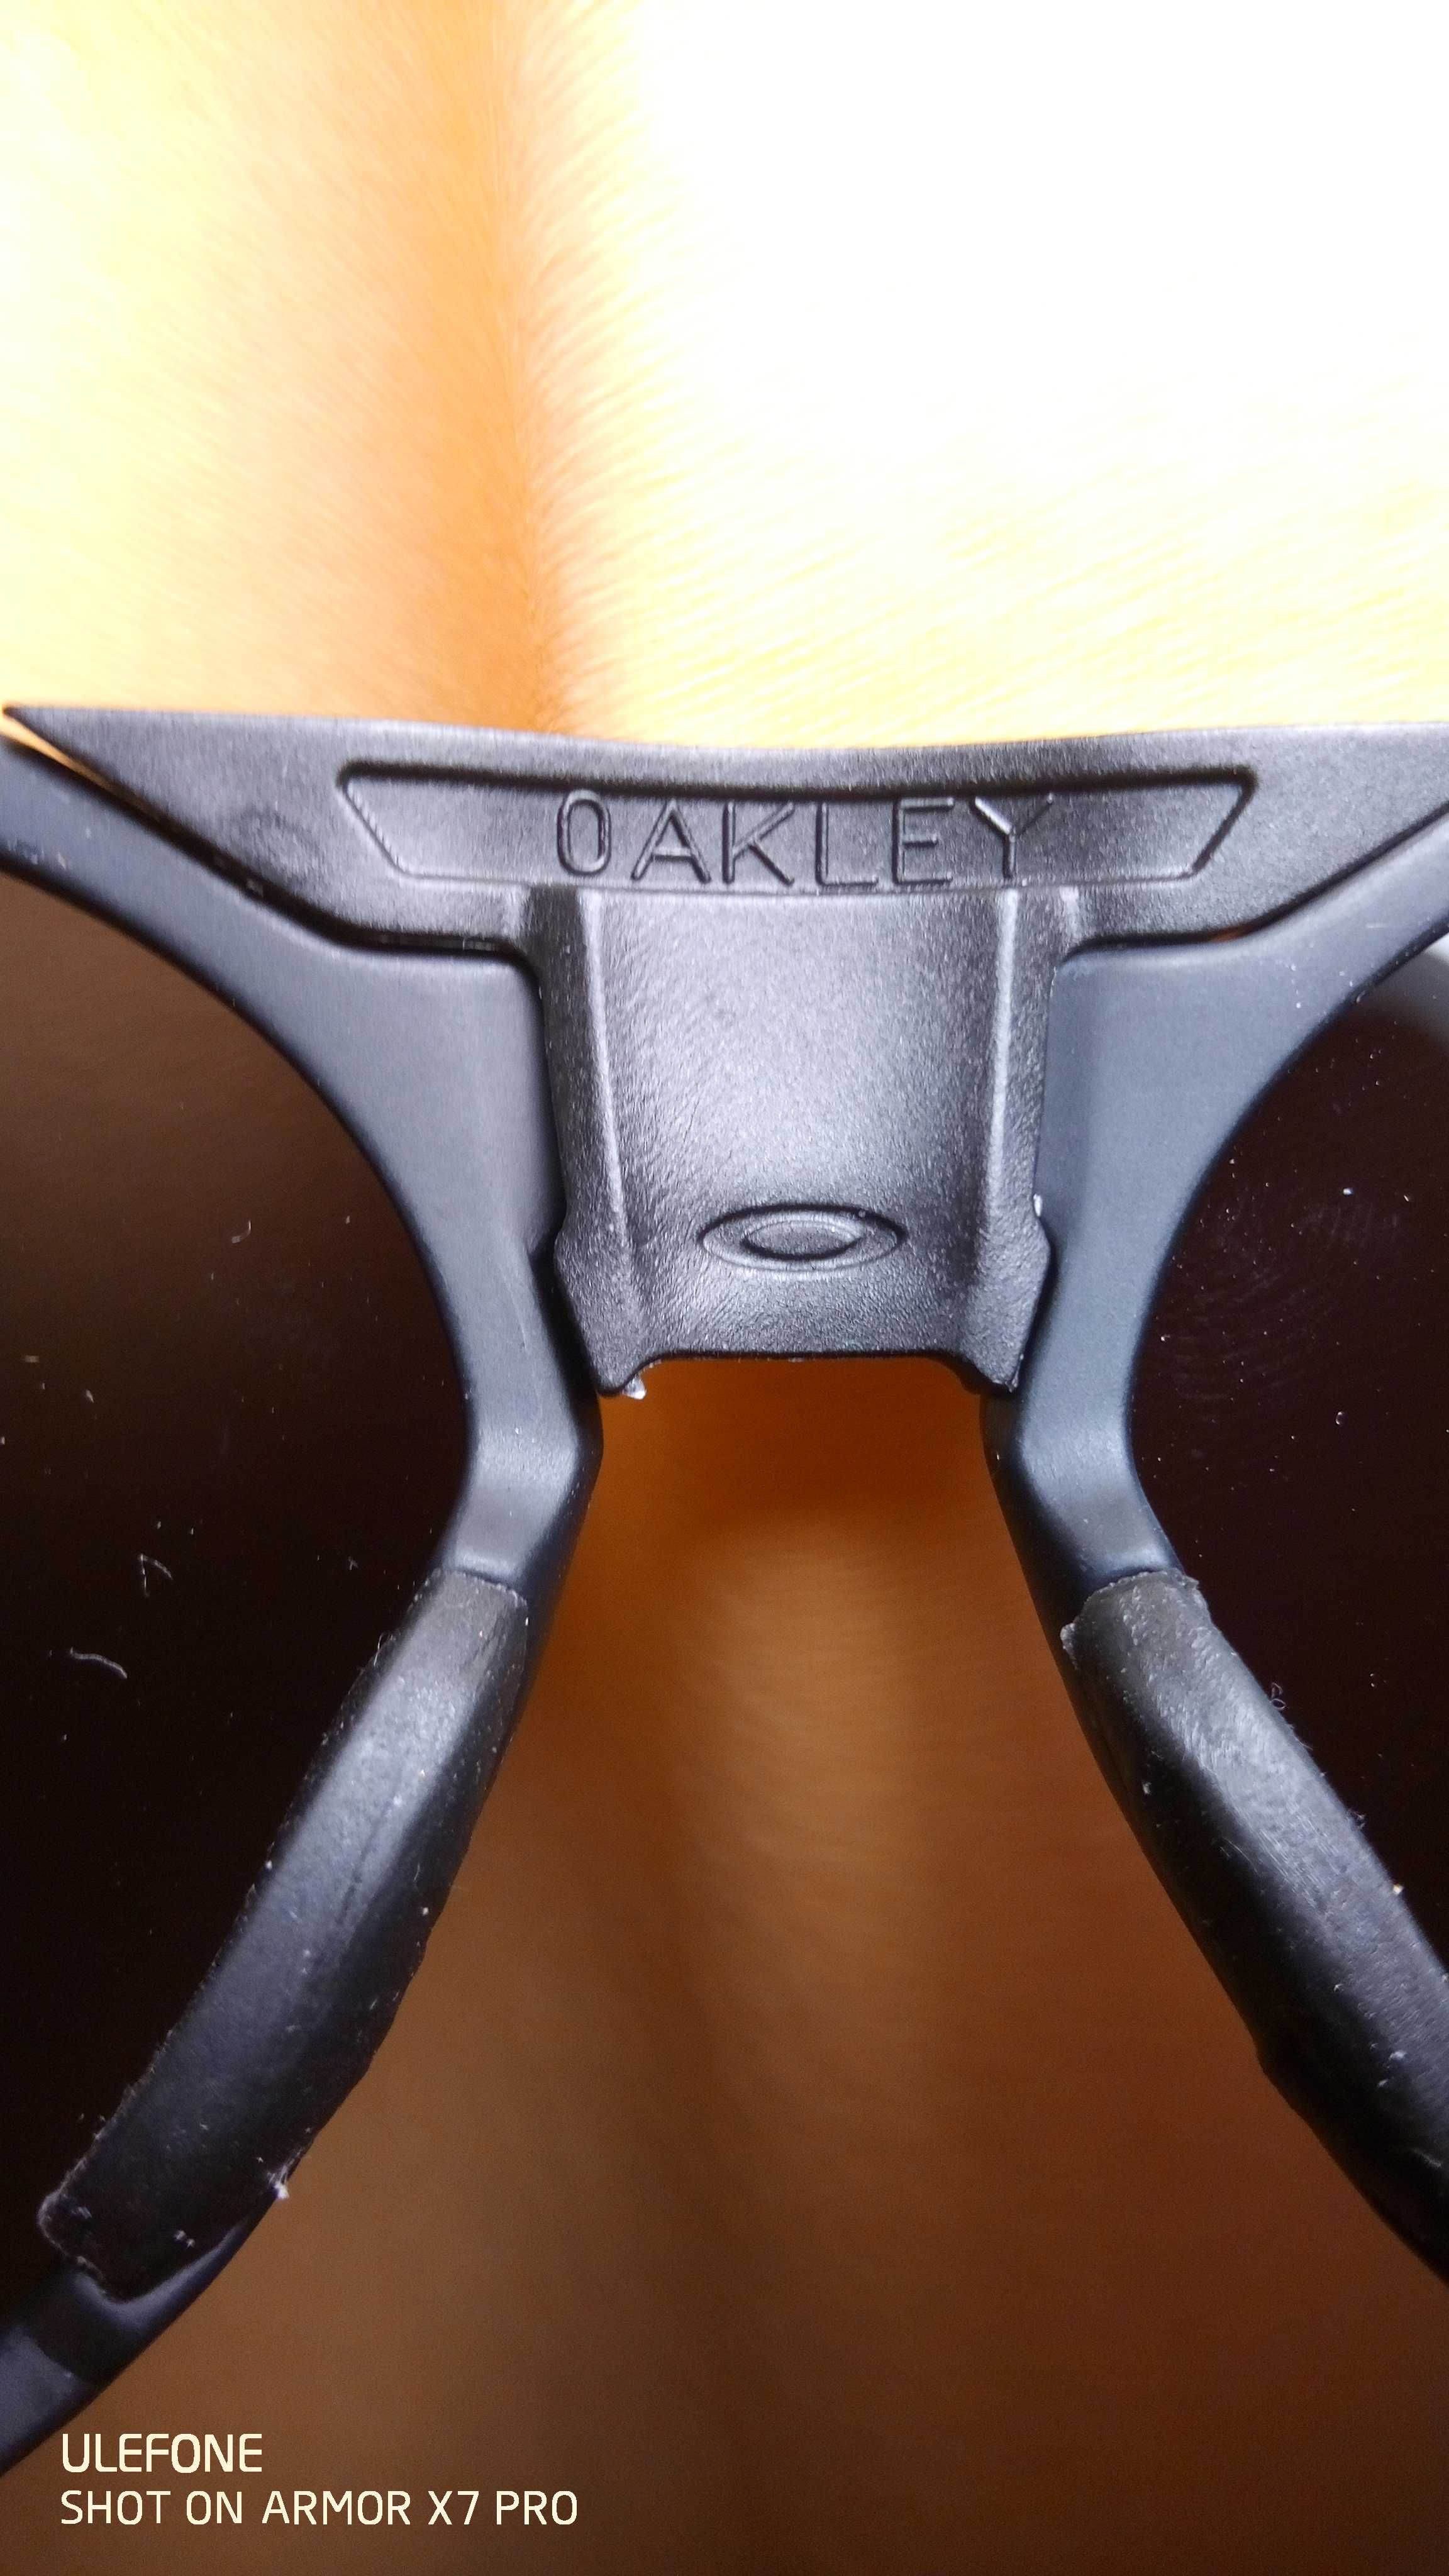 Окуляри Oakley хорошої якості зі шнурівкою. Для велосипеду, туризму.